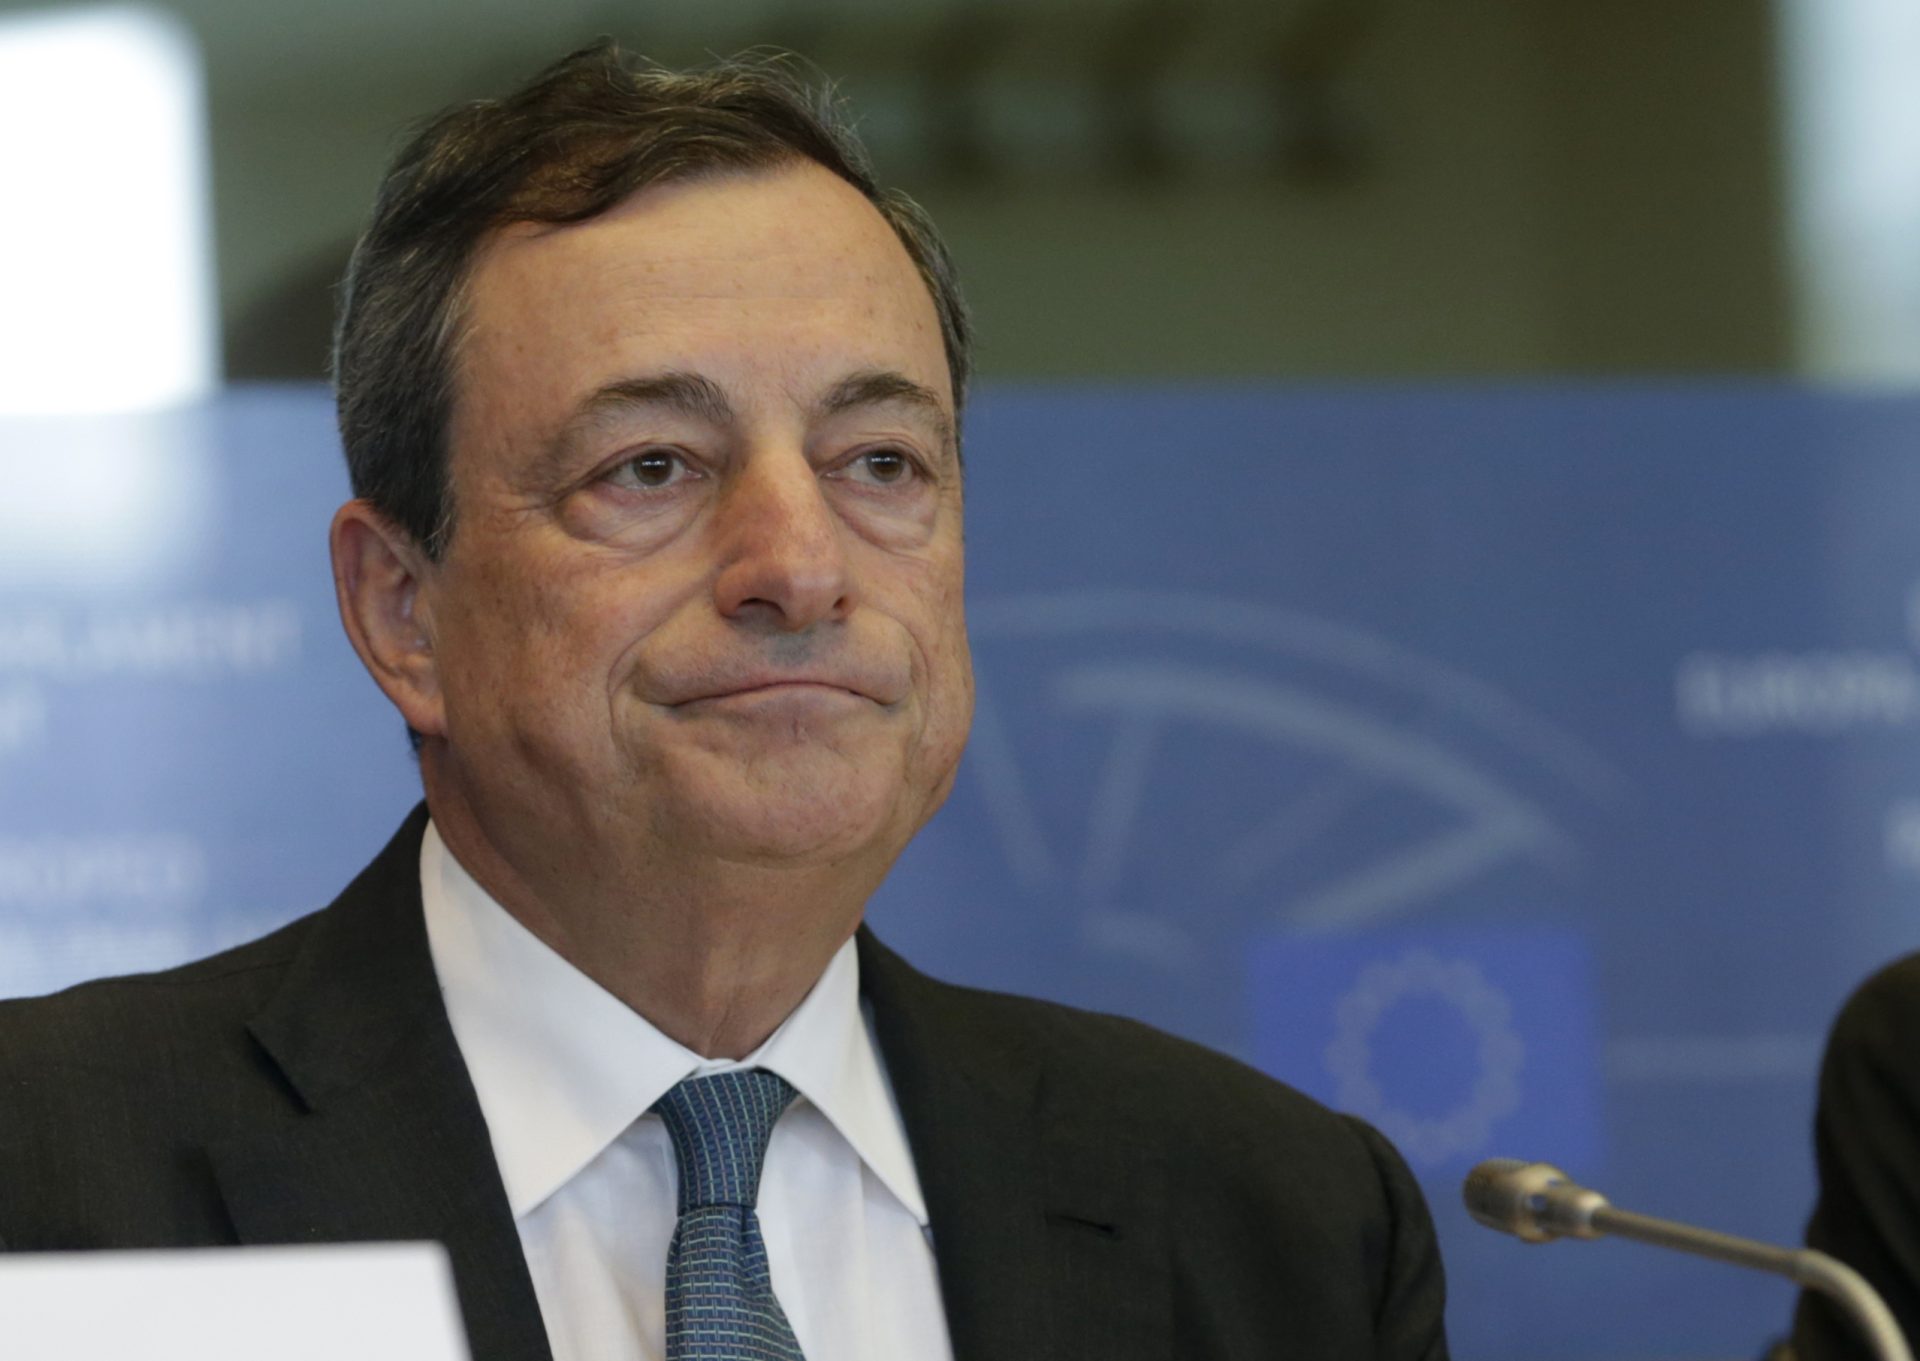 ‘Xô Draghi’: A ‘recepção’ do Bloco ao presidente do BCE